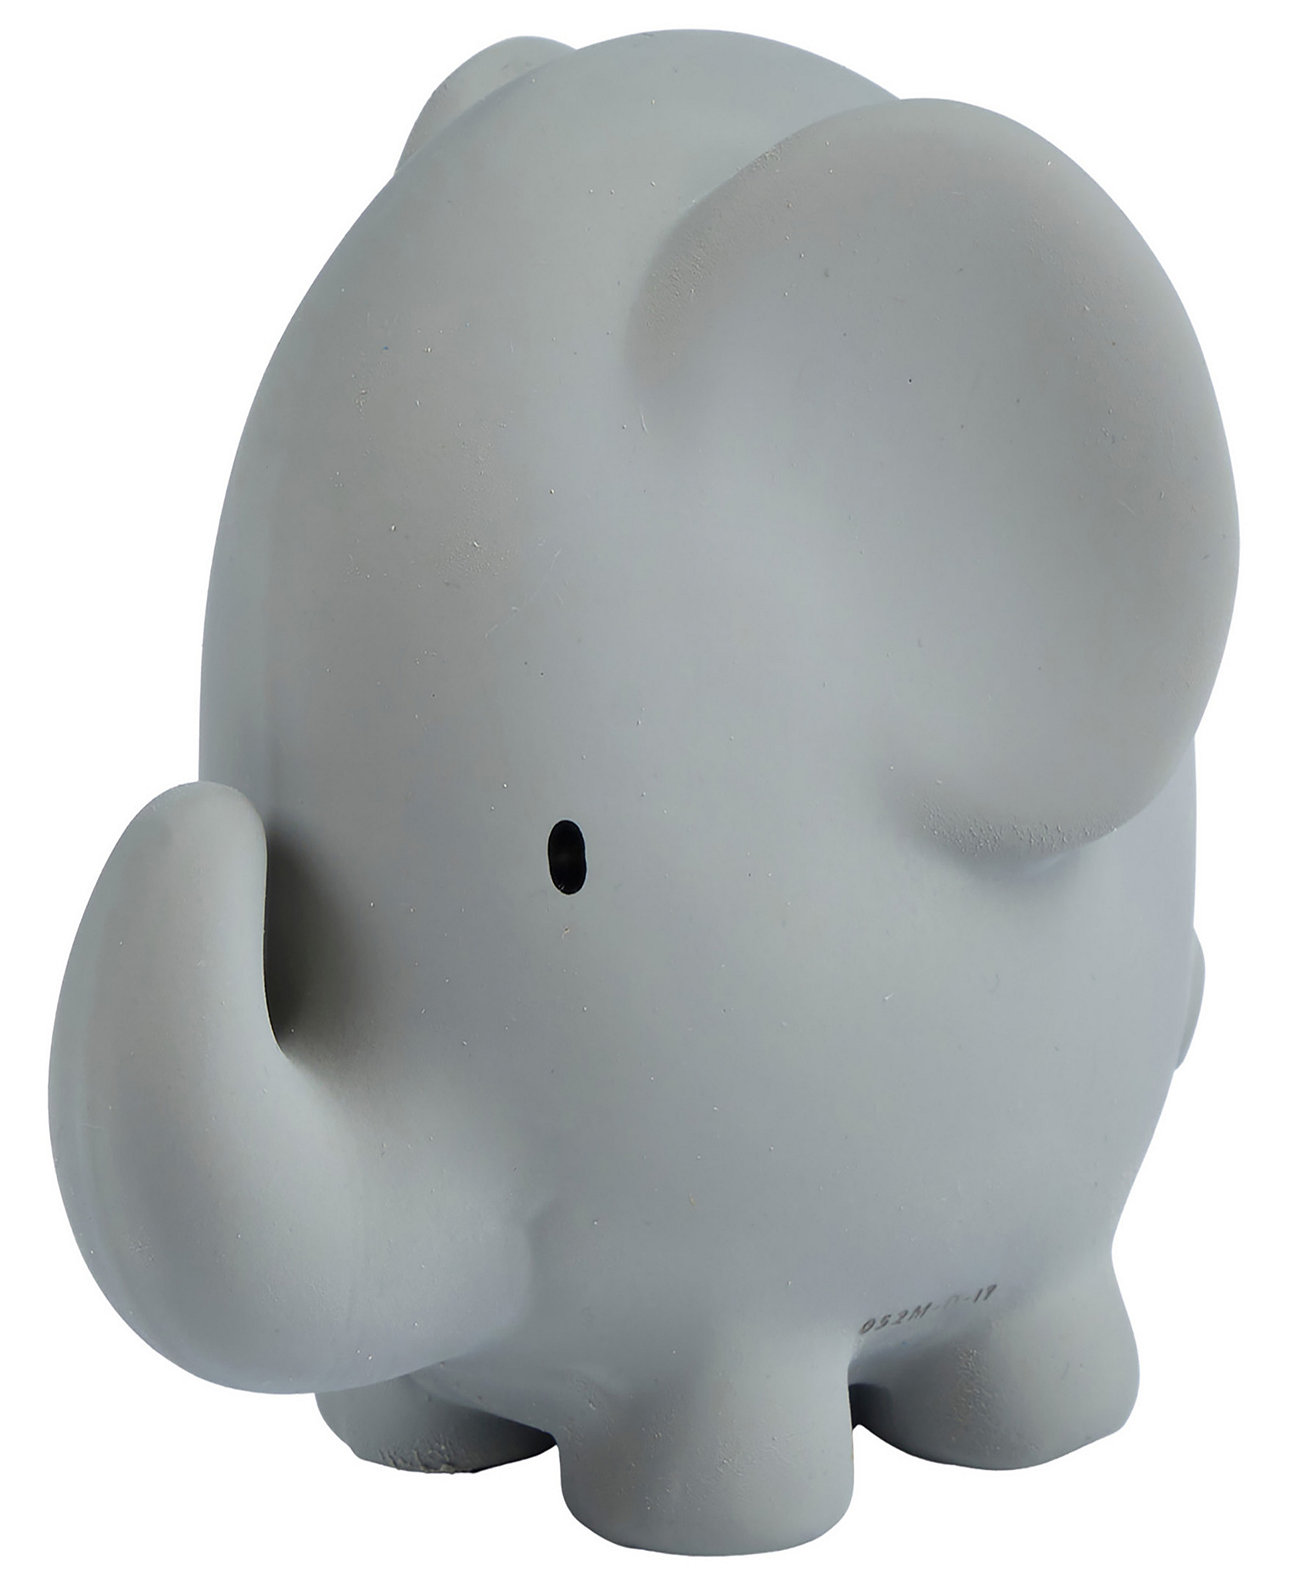 Игрушки Резиновая погремушка слона Прорезыватель для ванной Игрушка из натурального каучука Tikiri